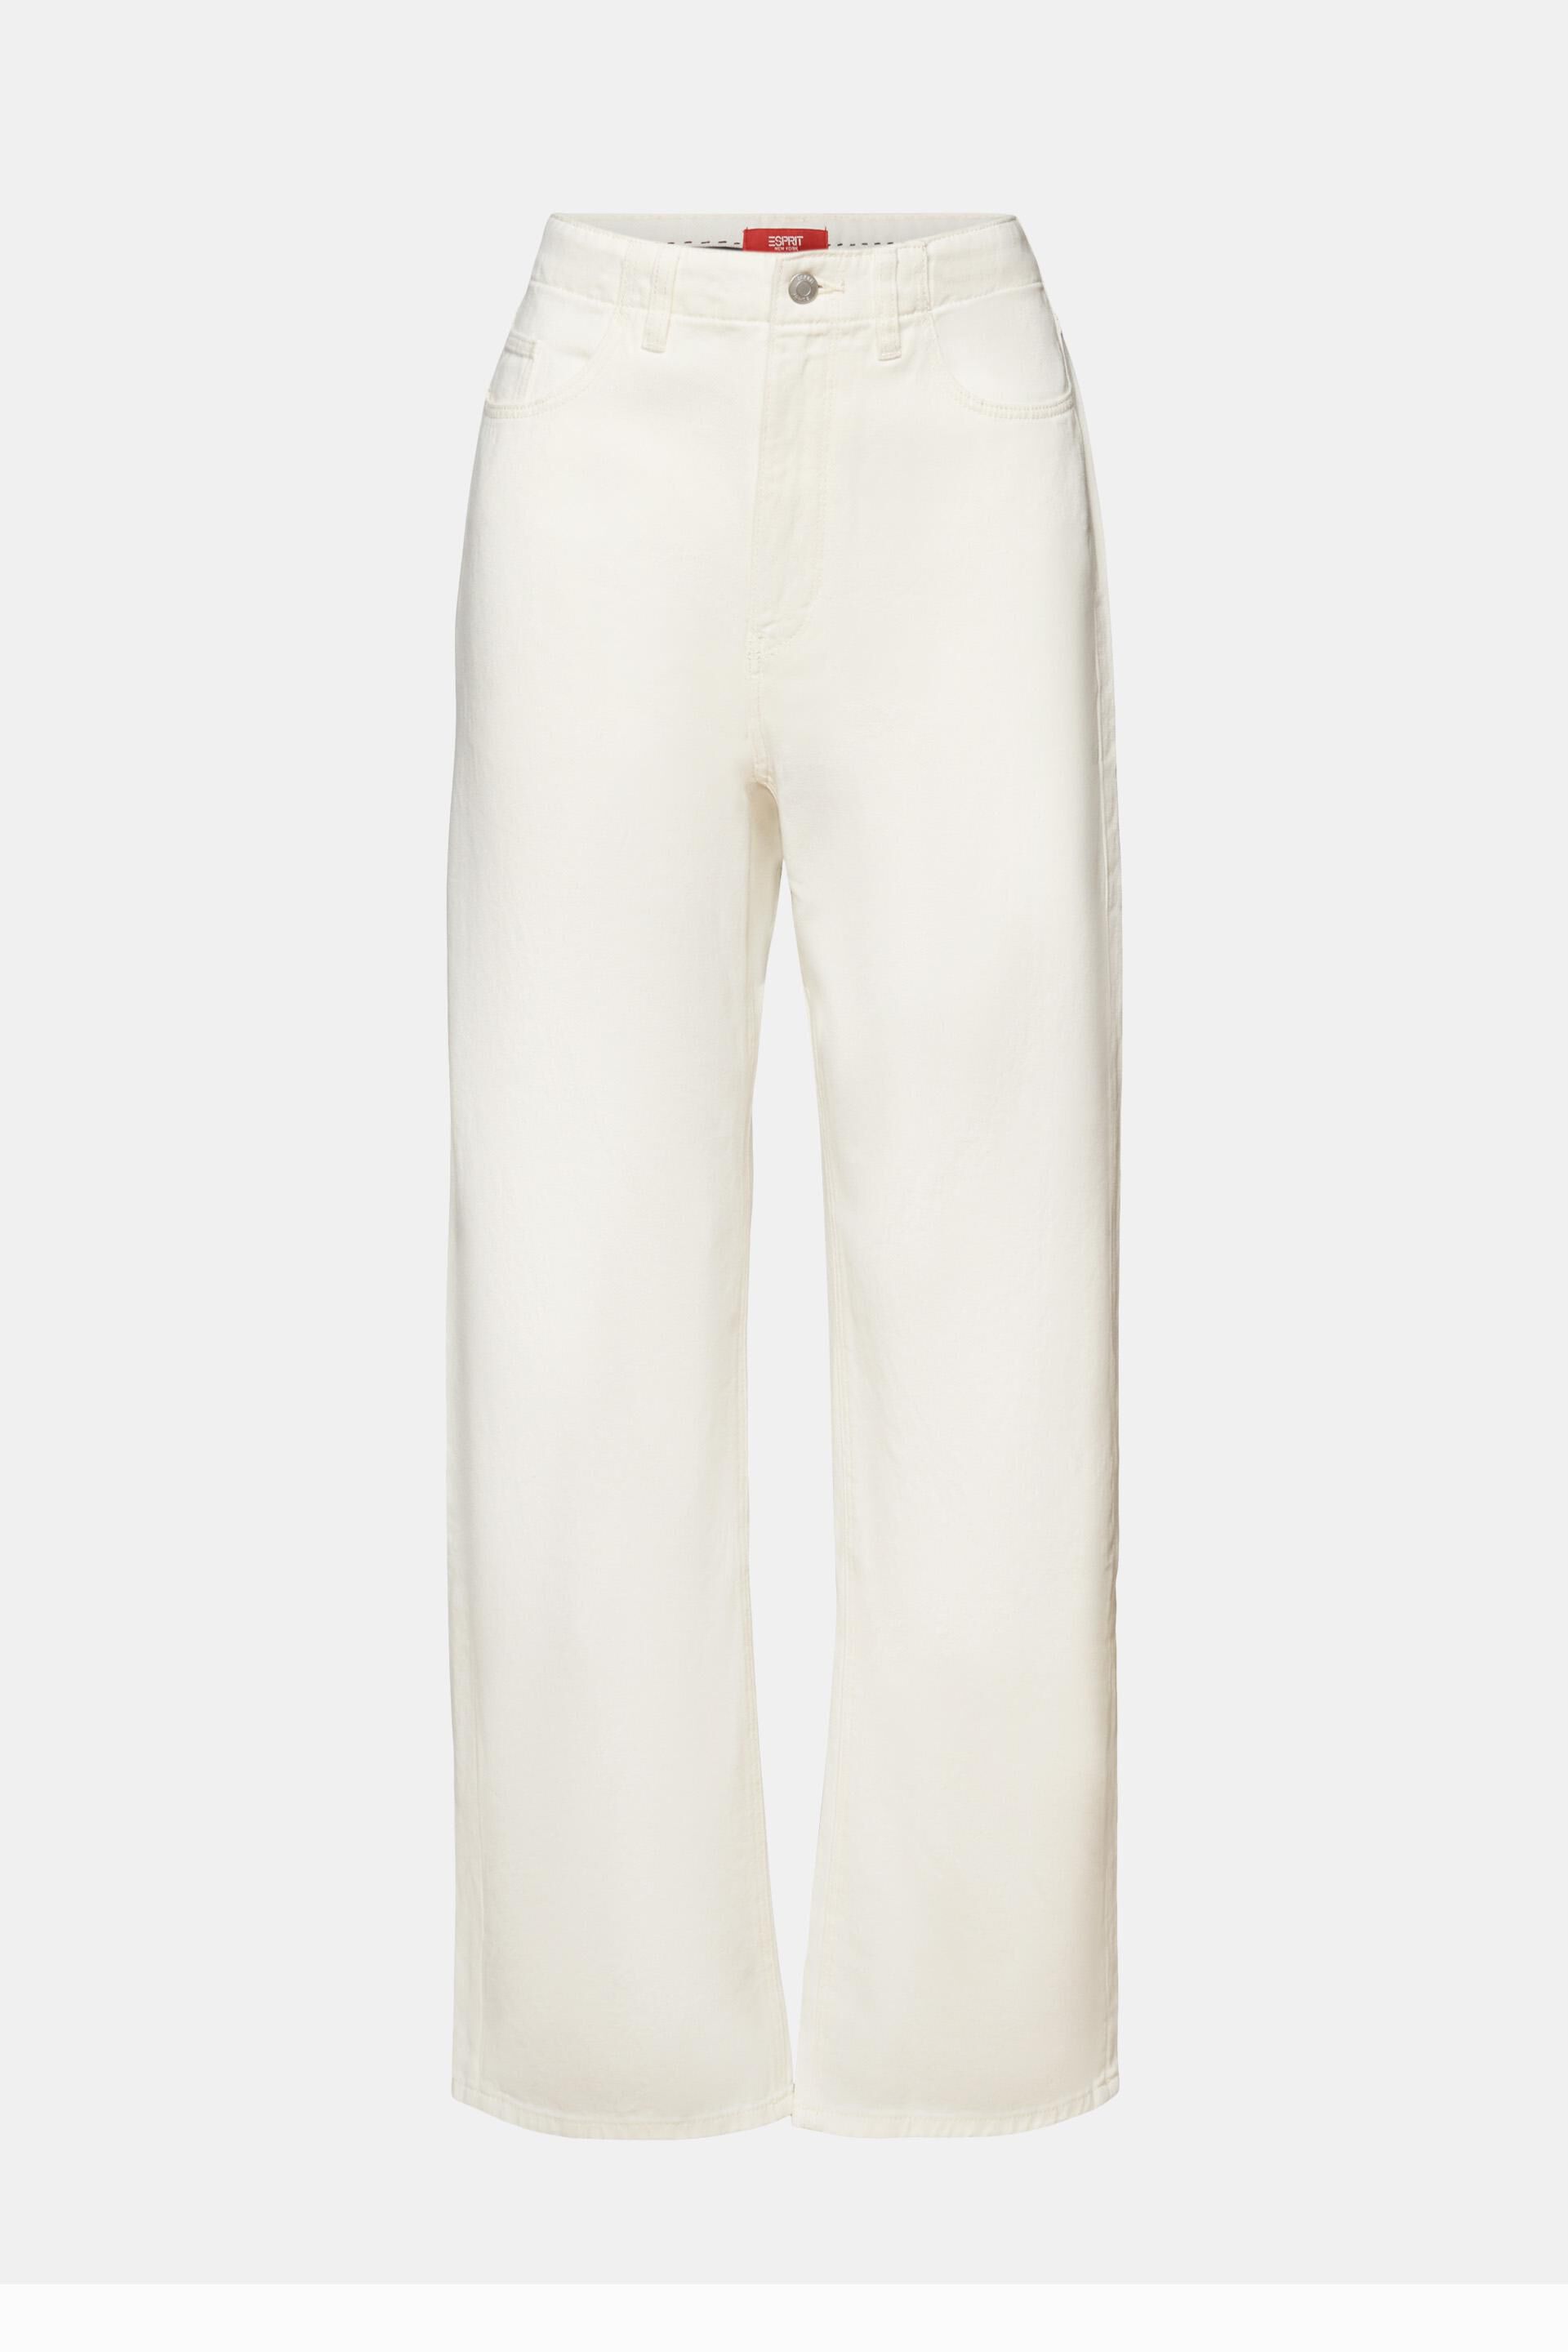 virblatt - Pantalones Anchos Mujer, 100% algodón